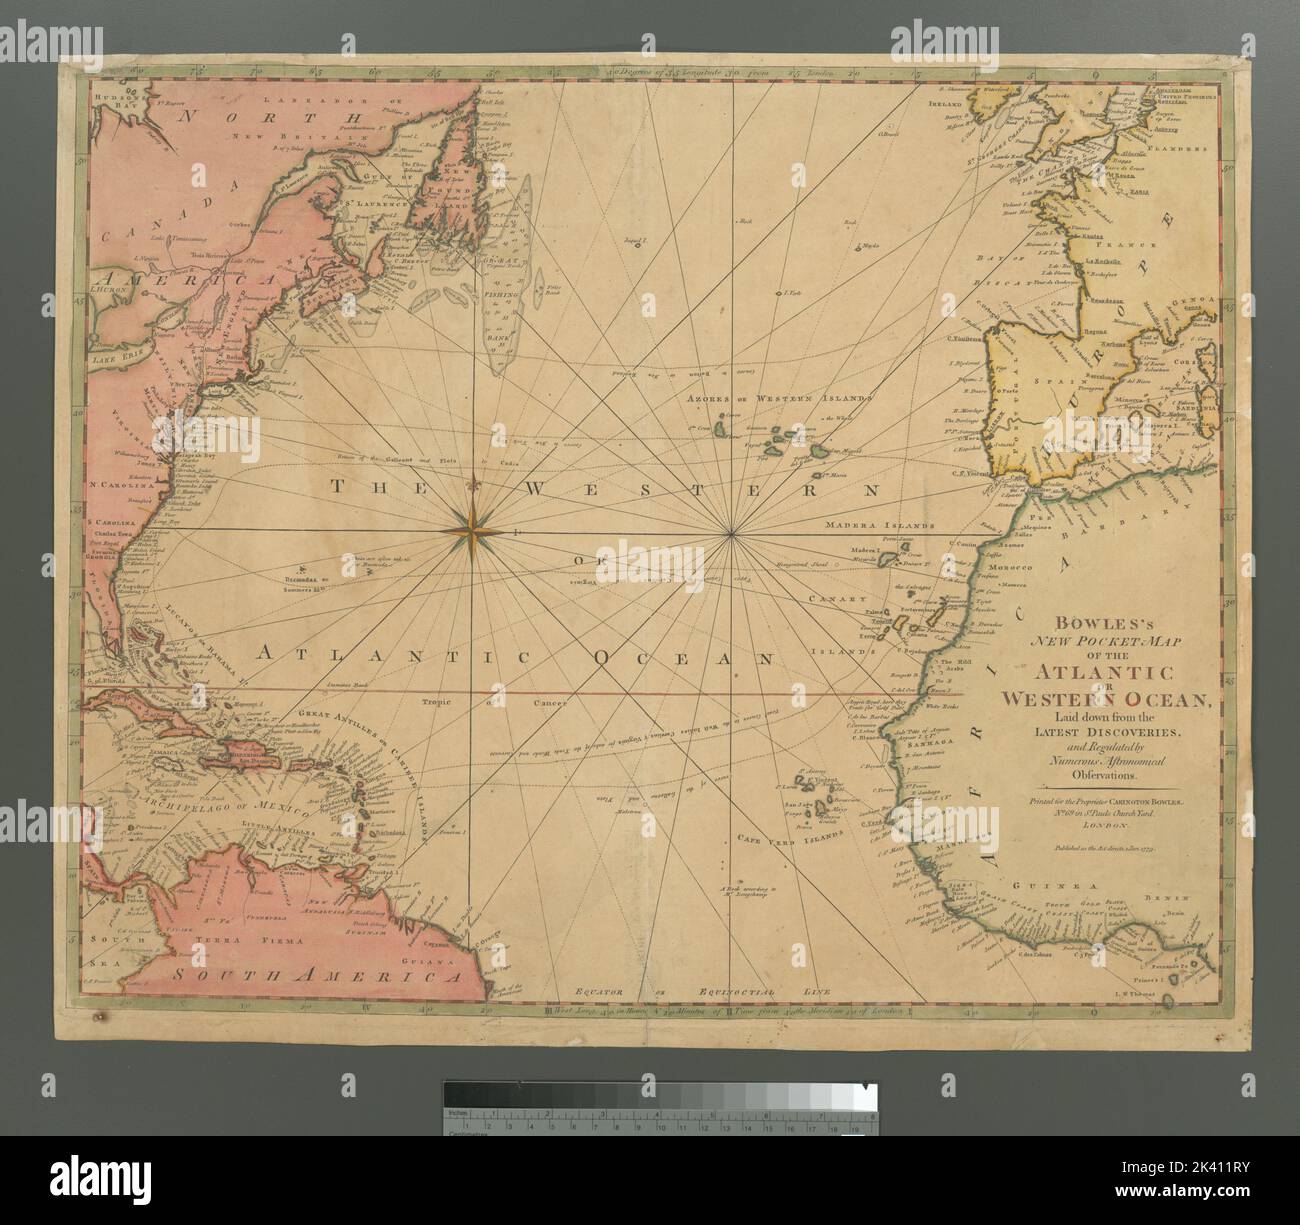 Atlantic Ocean 1456 Map 